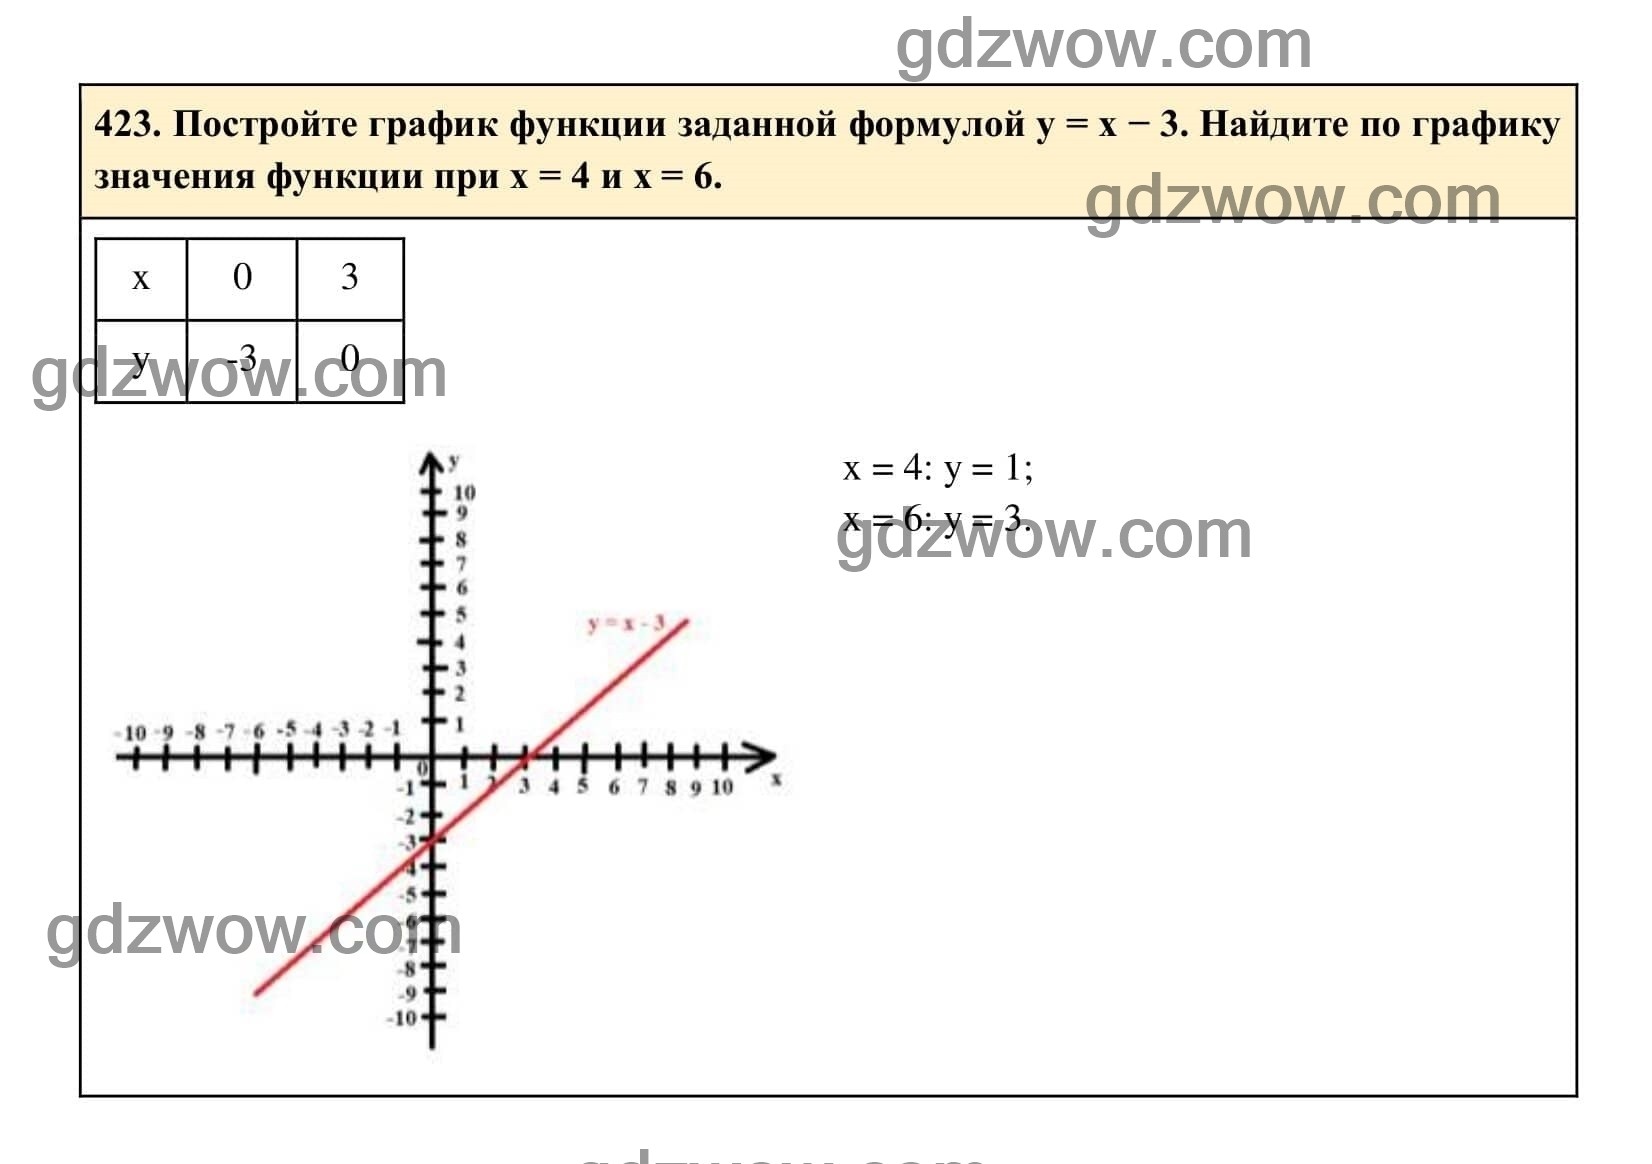 Упражнение 423 - ГДЗ по Алгебре 7 класс Учебник Макарычев (решебник) - GDZwow